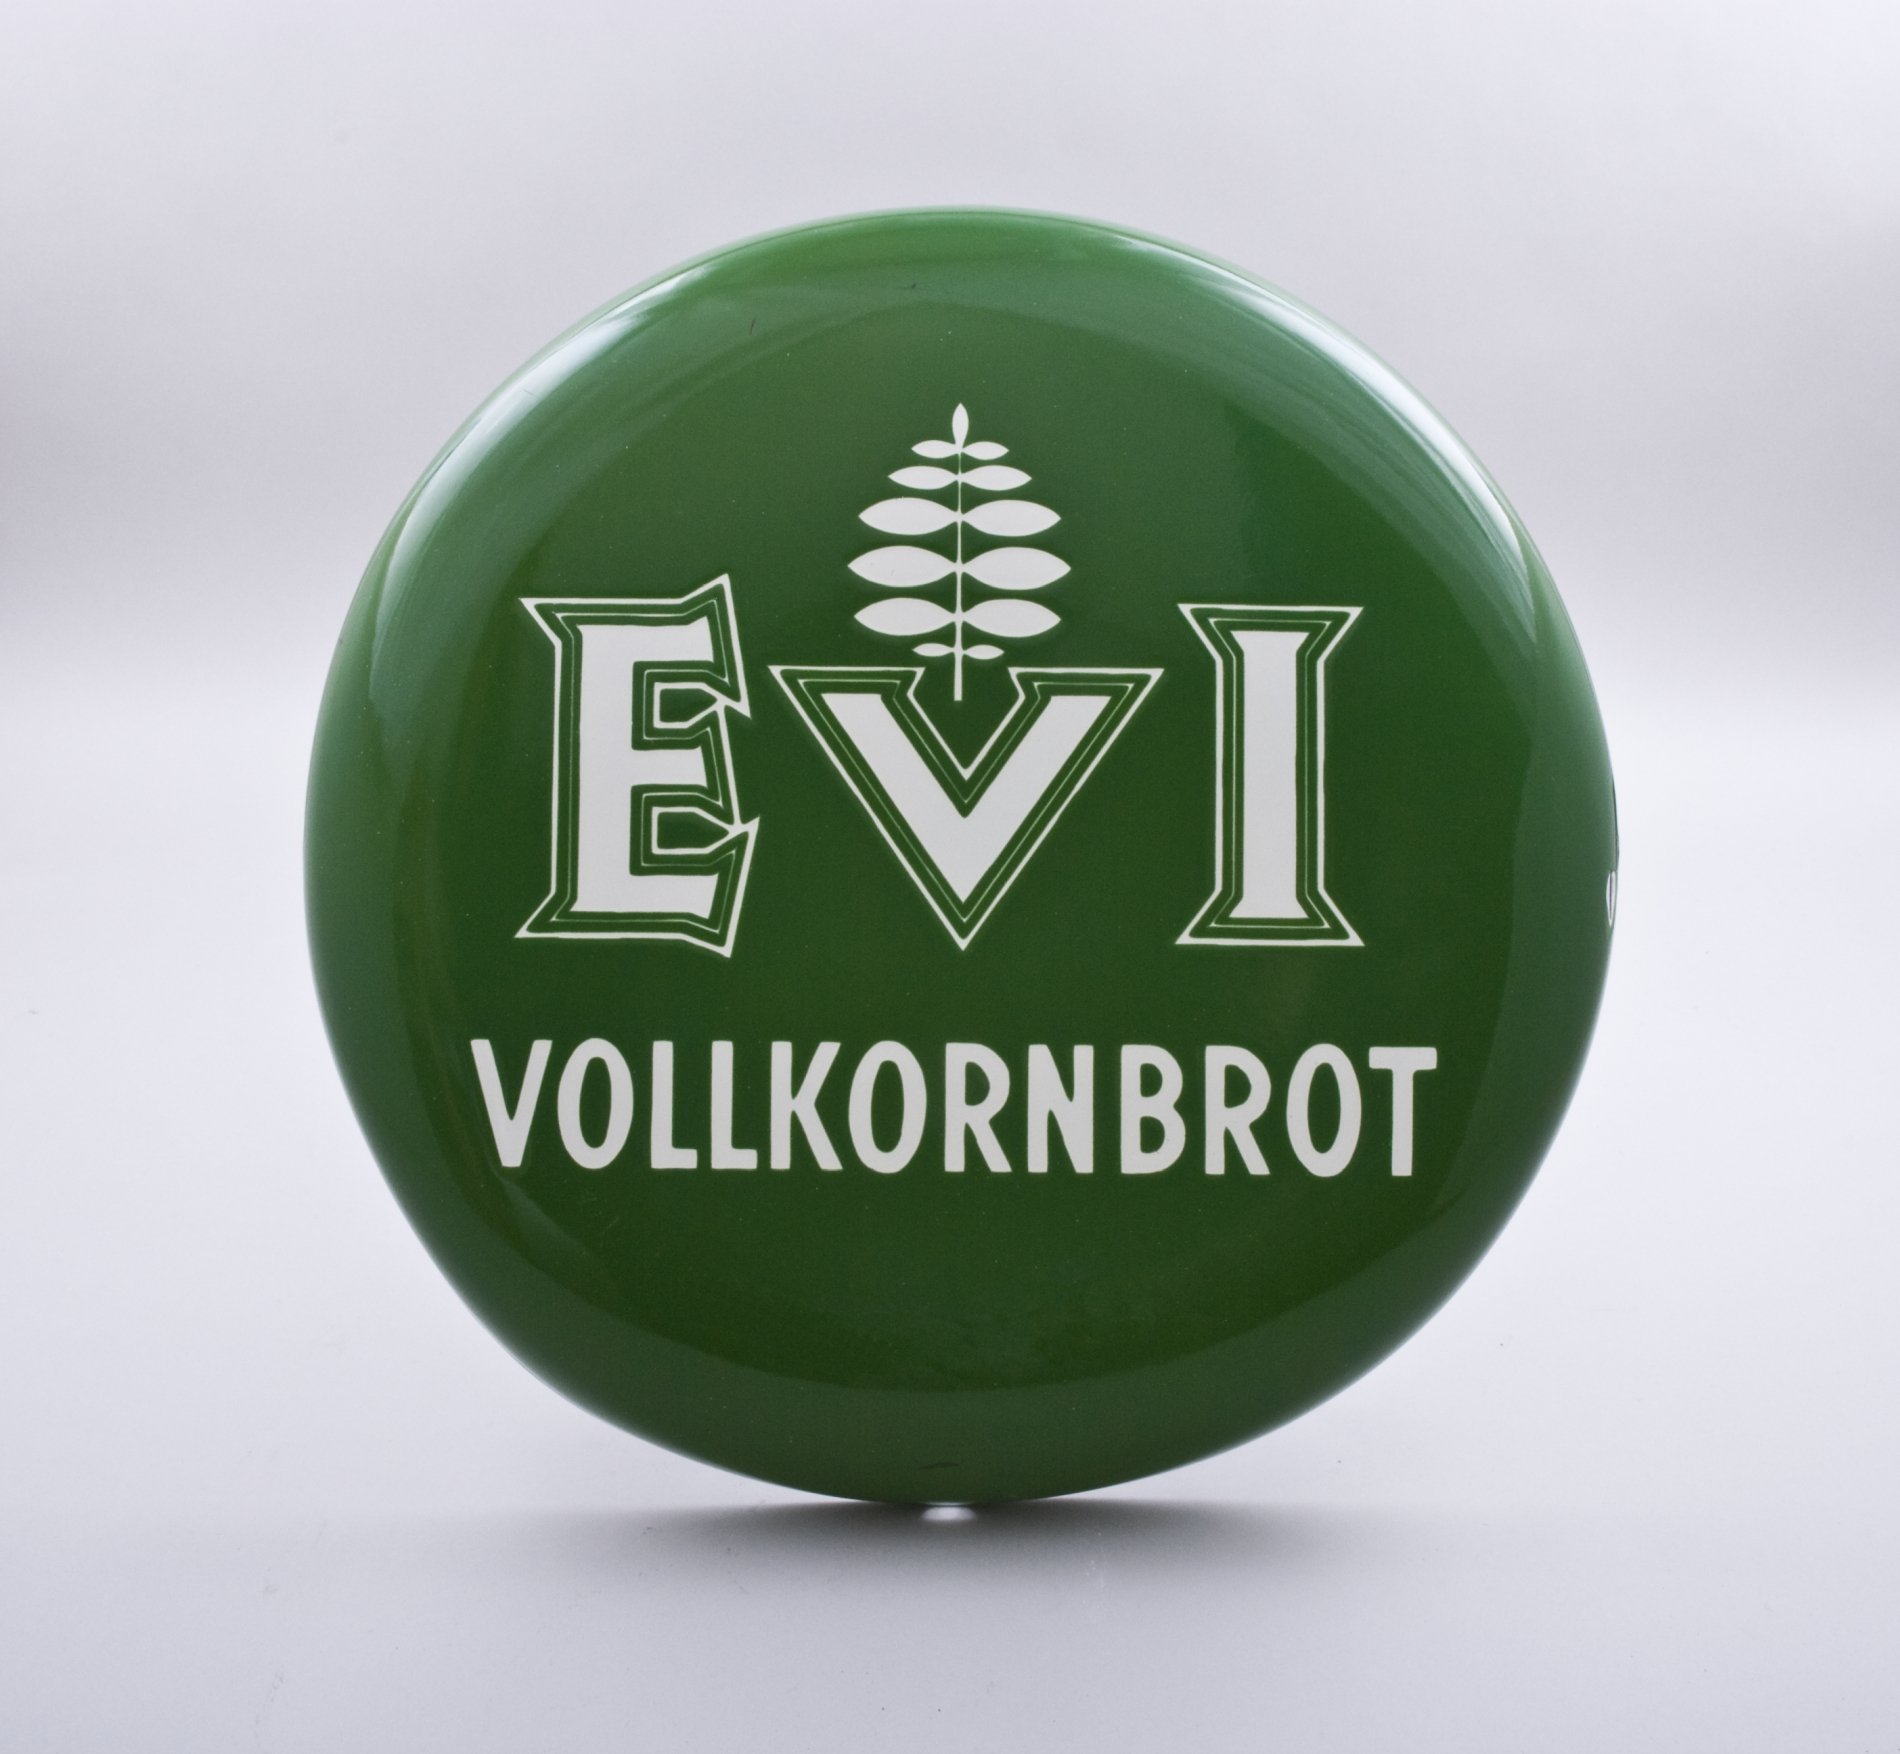 Reklameschild "Evi Vollkornbrot" (Stiftung Domäne Dahlem - Landgut und Museum, Weiternutzung nur mit Genehmigung des Museums CC BY-NC-SA)